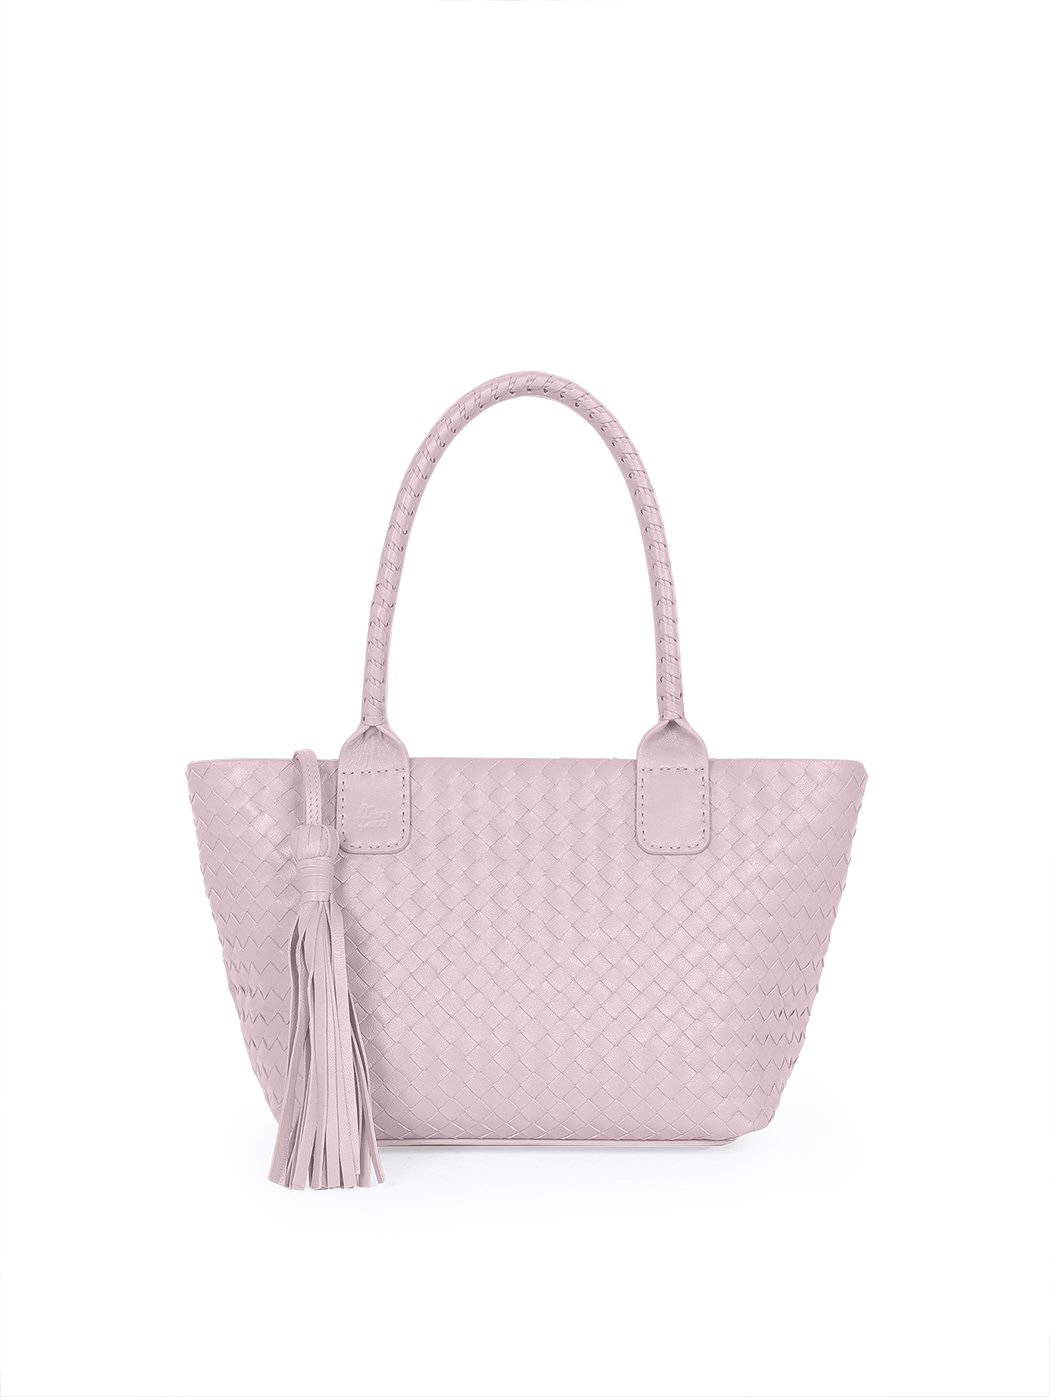 Кожаная плетеная сумка – тоут коллекции Intrecci розового цвета